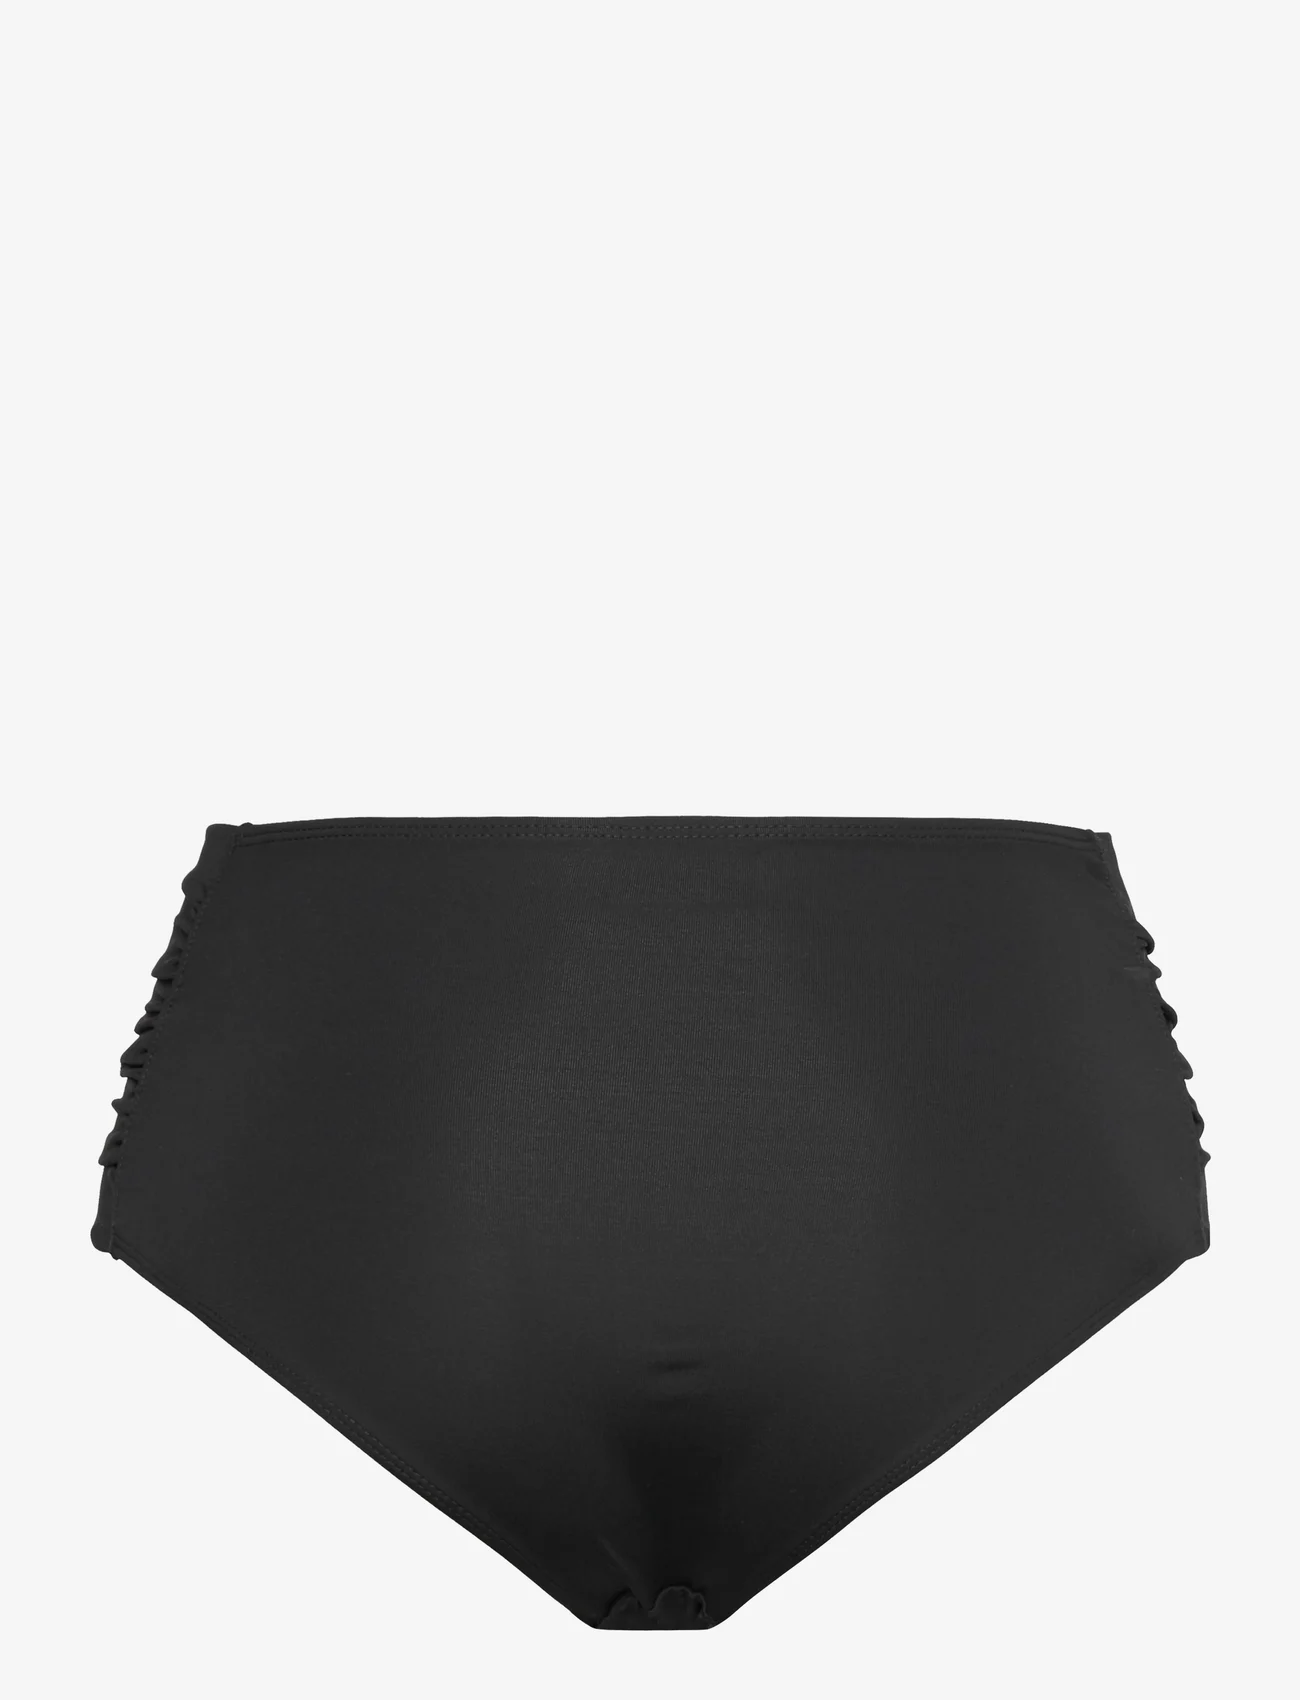 Panos Emporio - Olympia Solid Btm - bikini-slips - black - 1